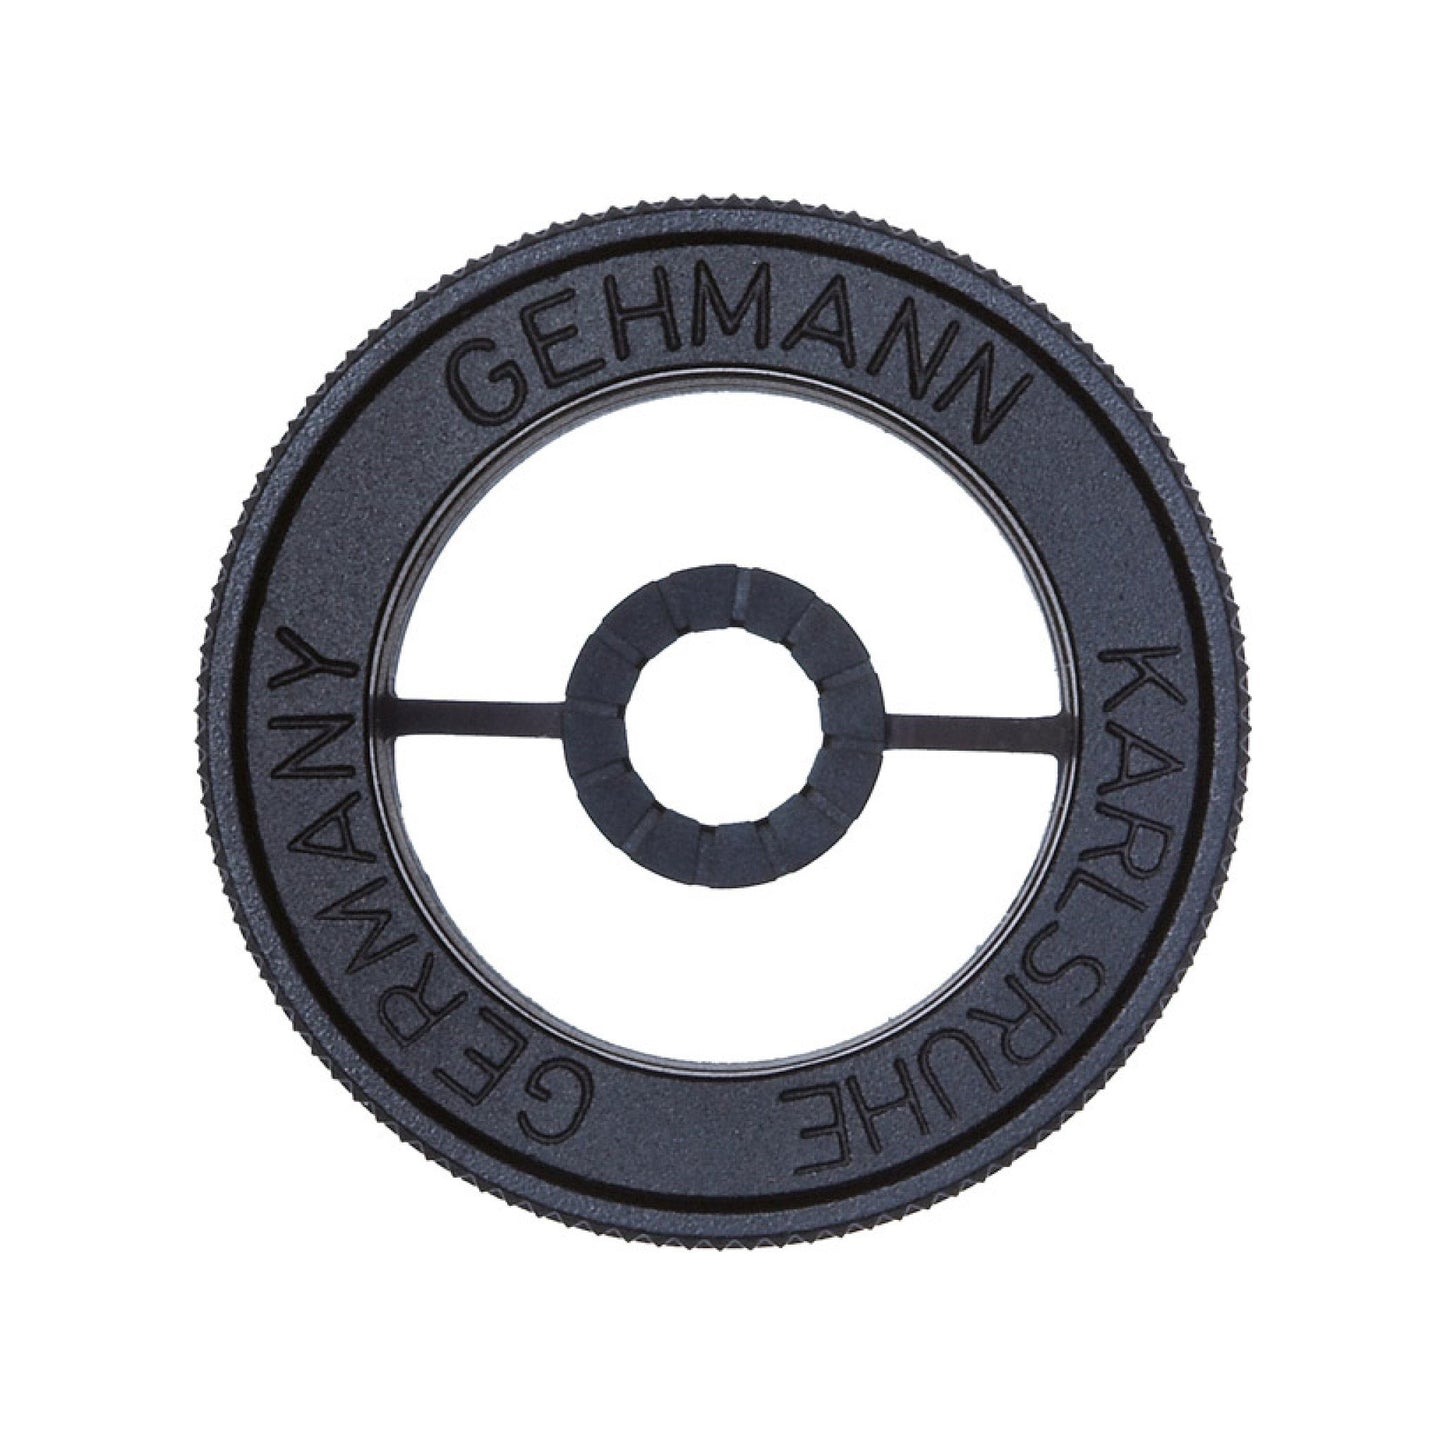 Gehmann 520 Adjustable Front Sight Iris